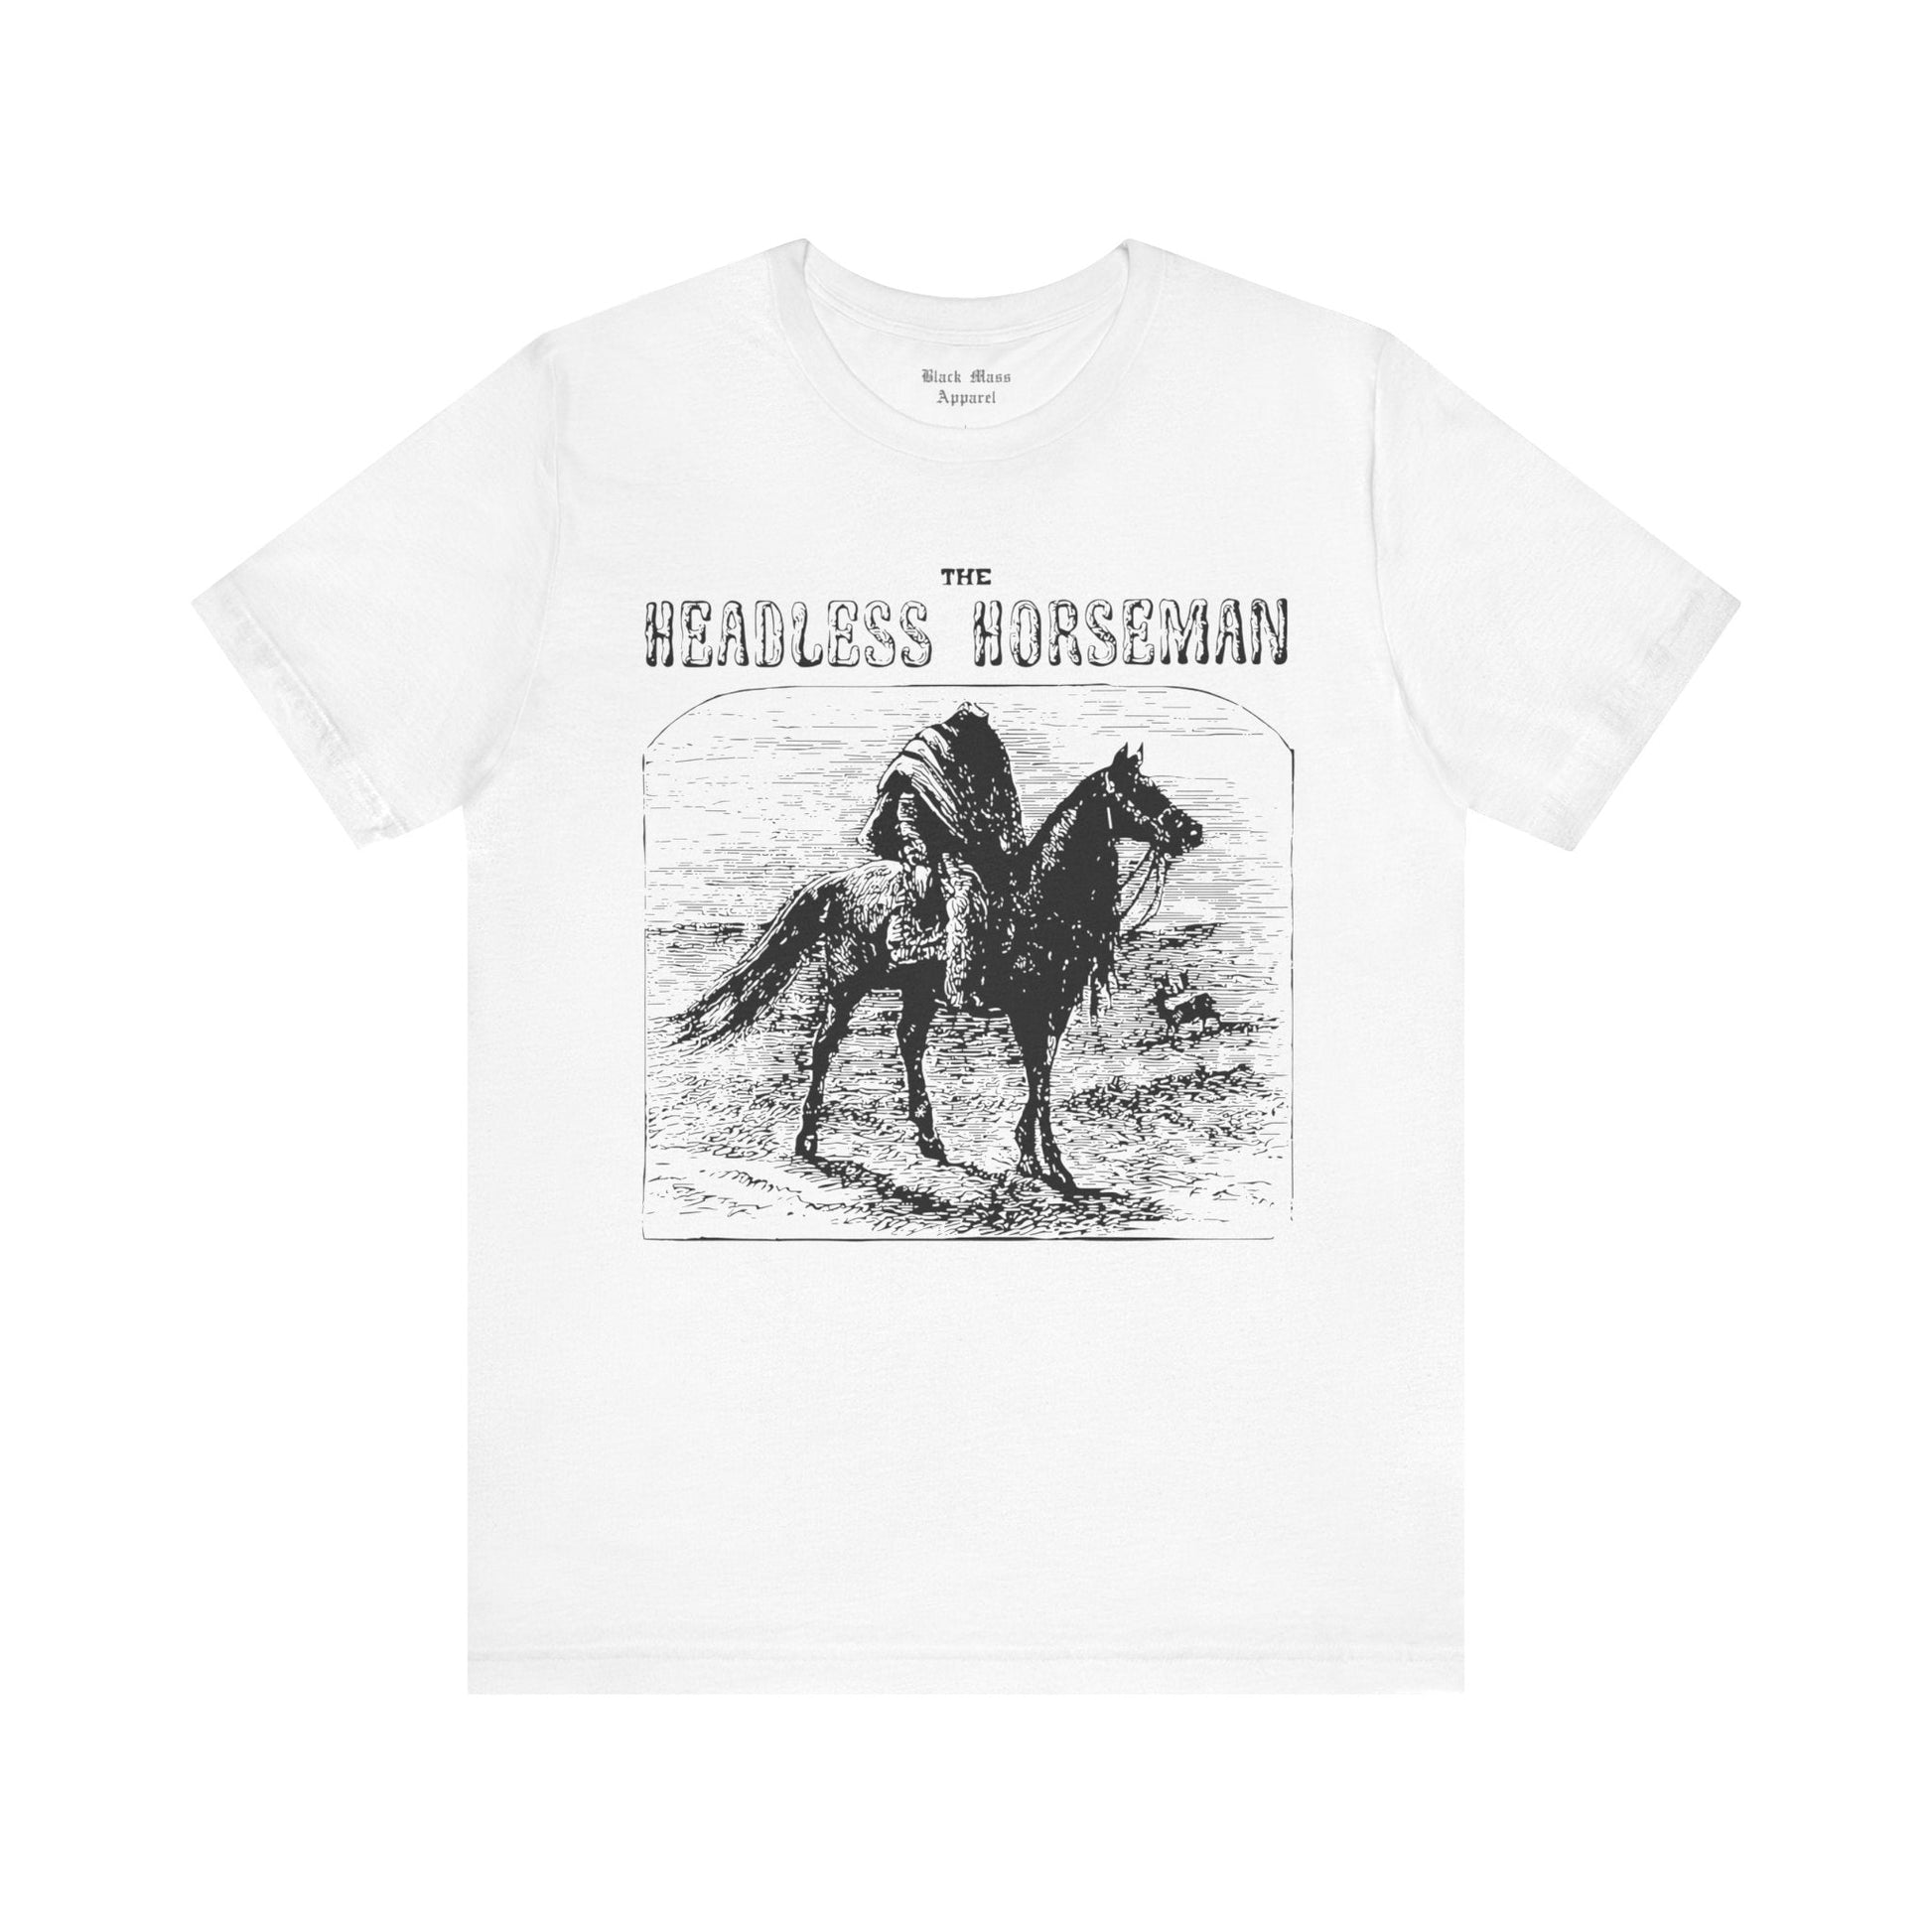 The Headless Horseman I - Black Mass Apparel - T-Shirt